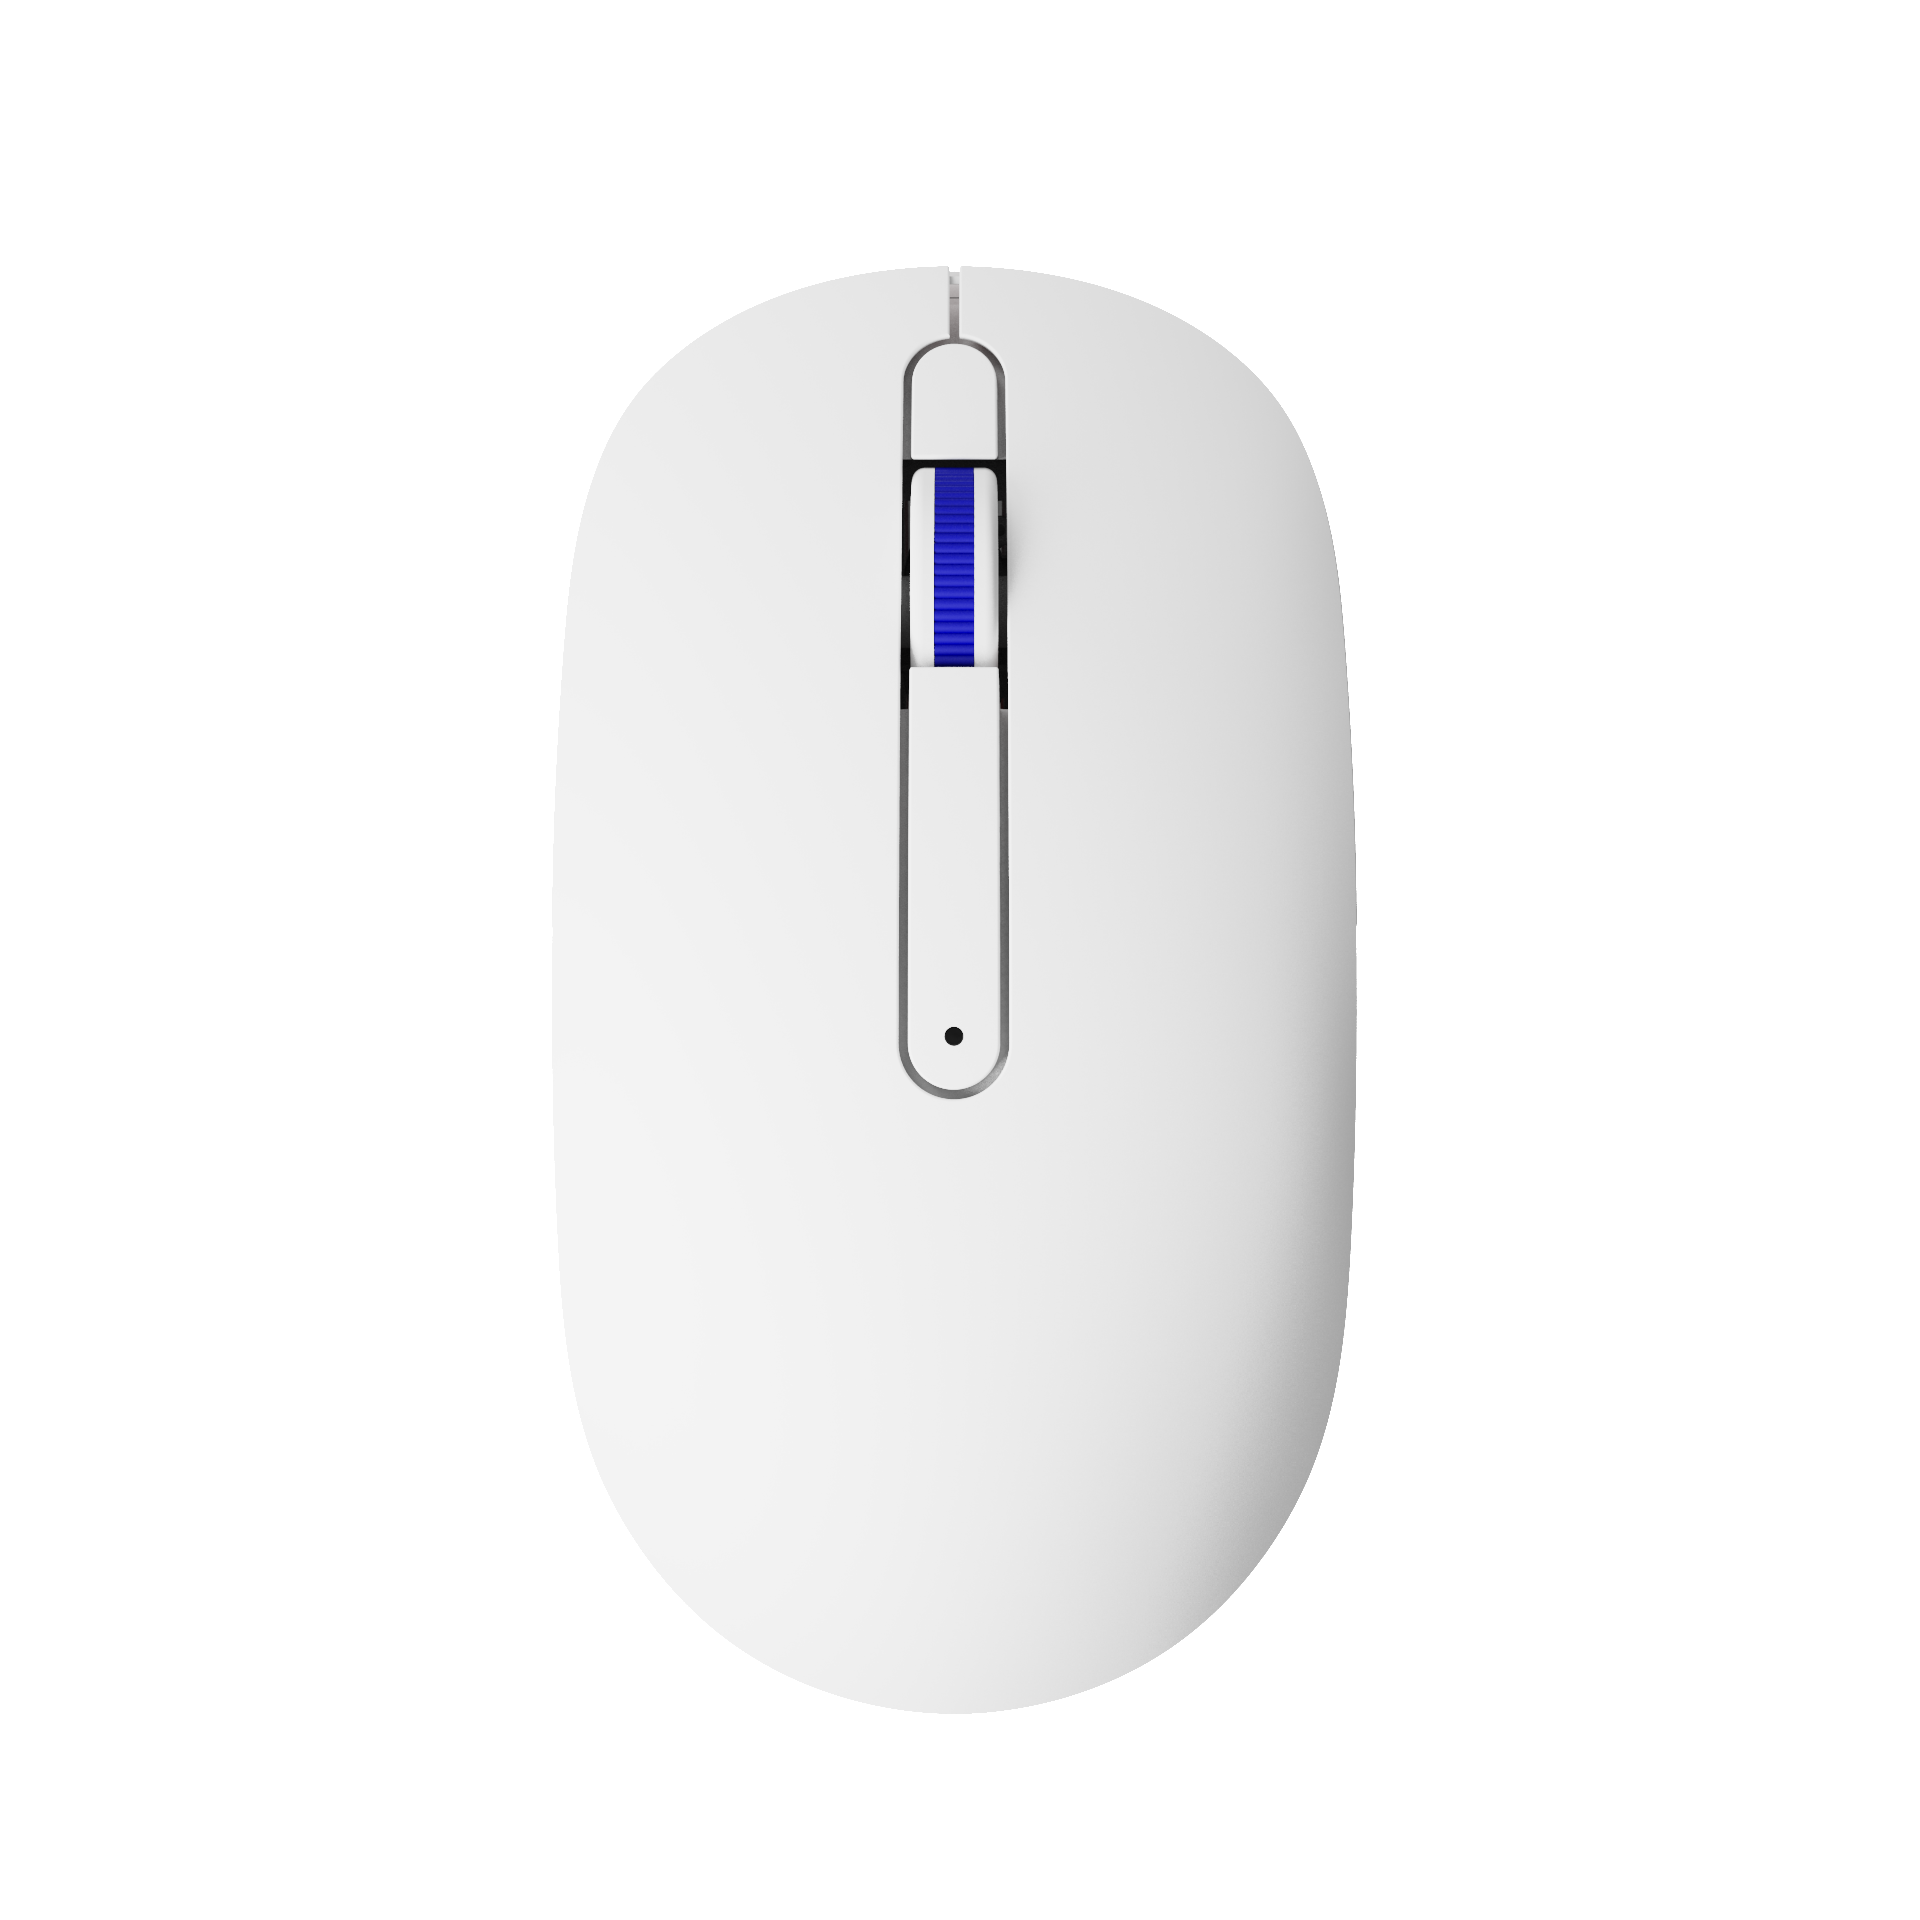 Monsgeek D1 Wireless Mouse